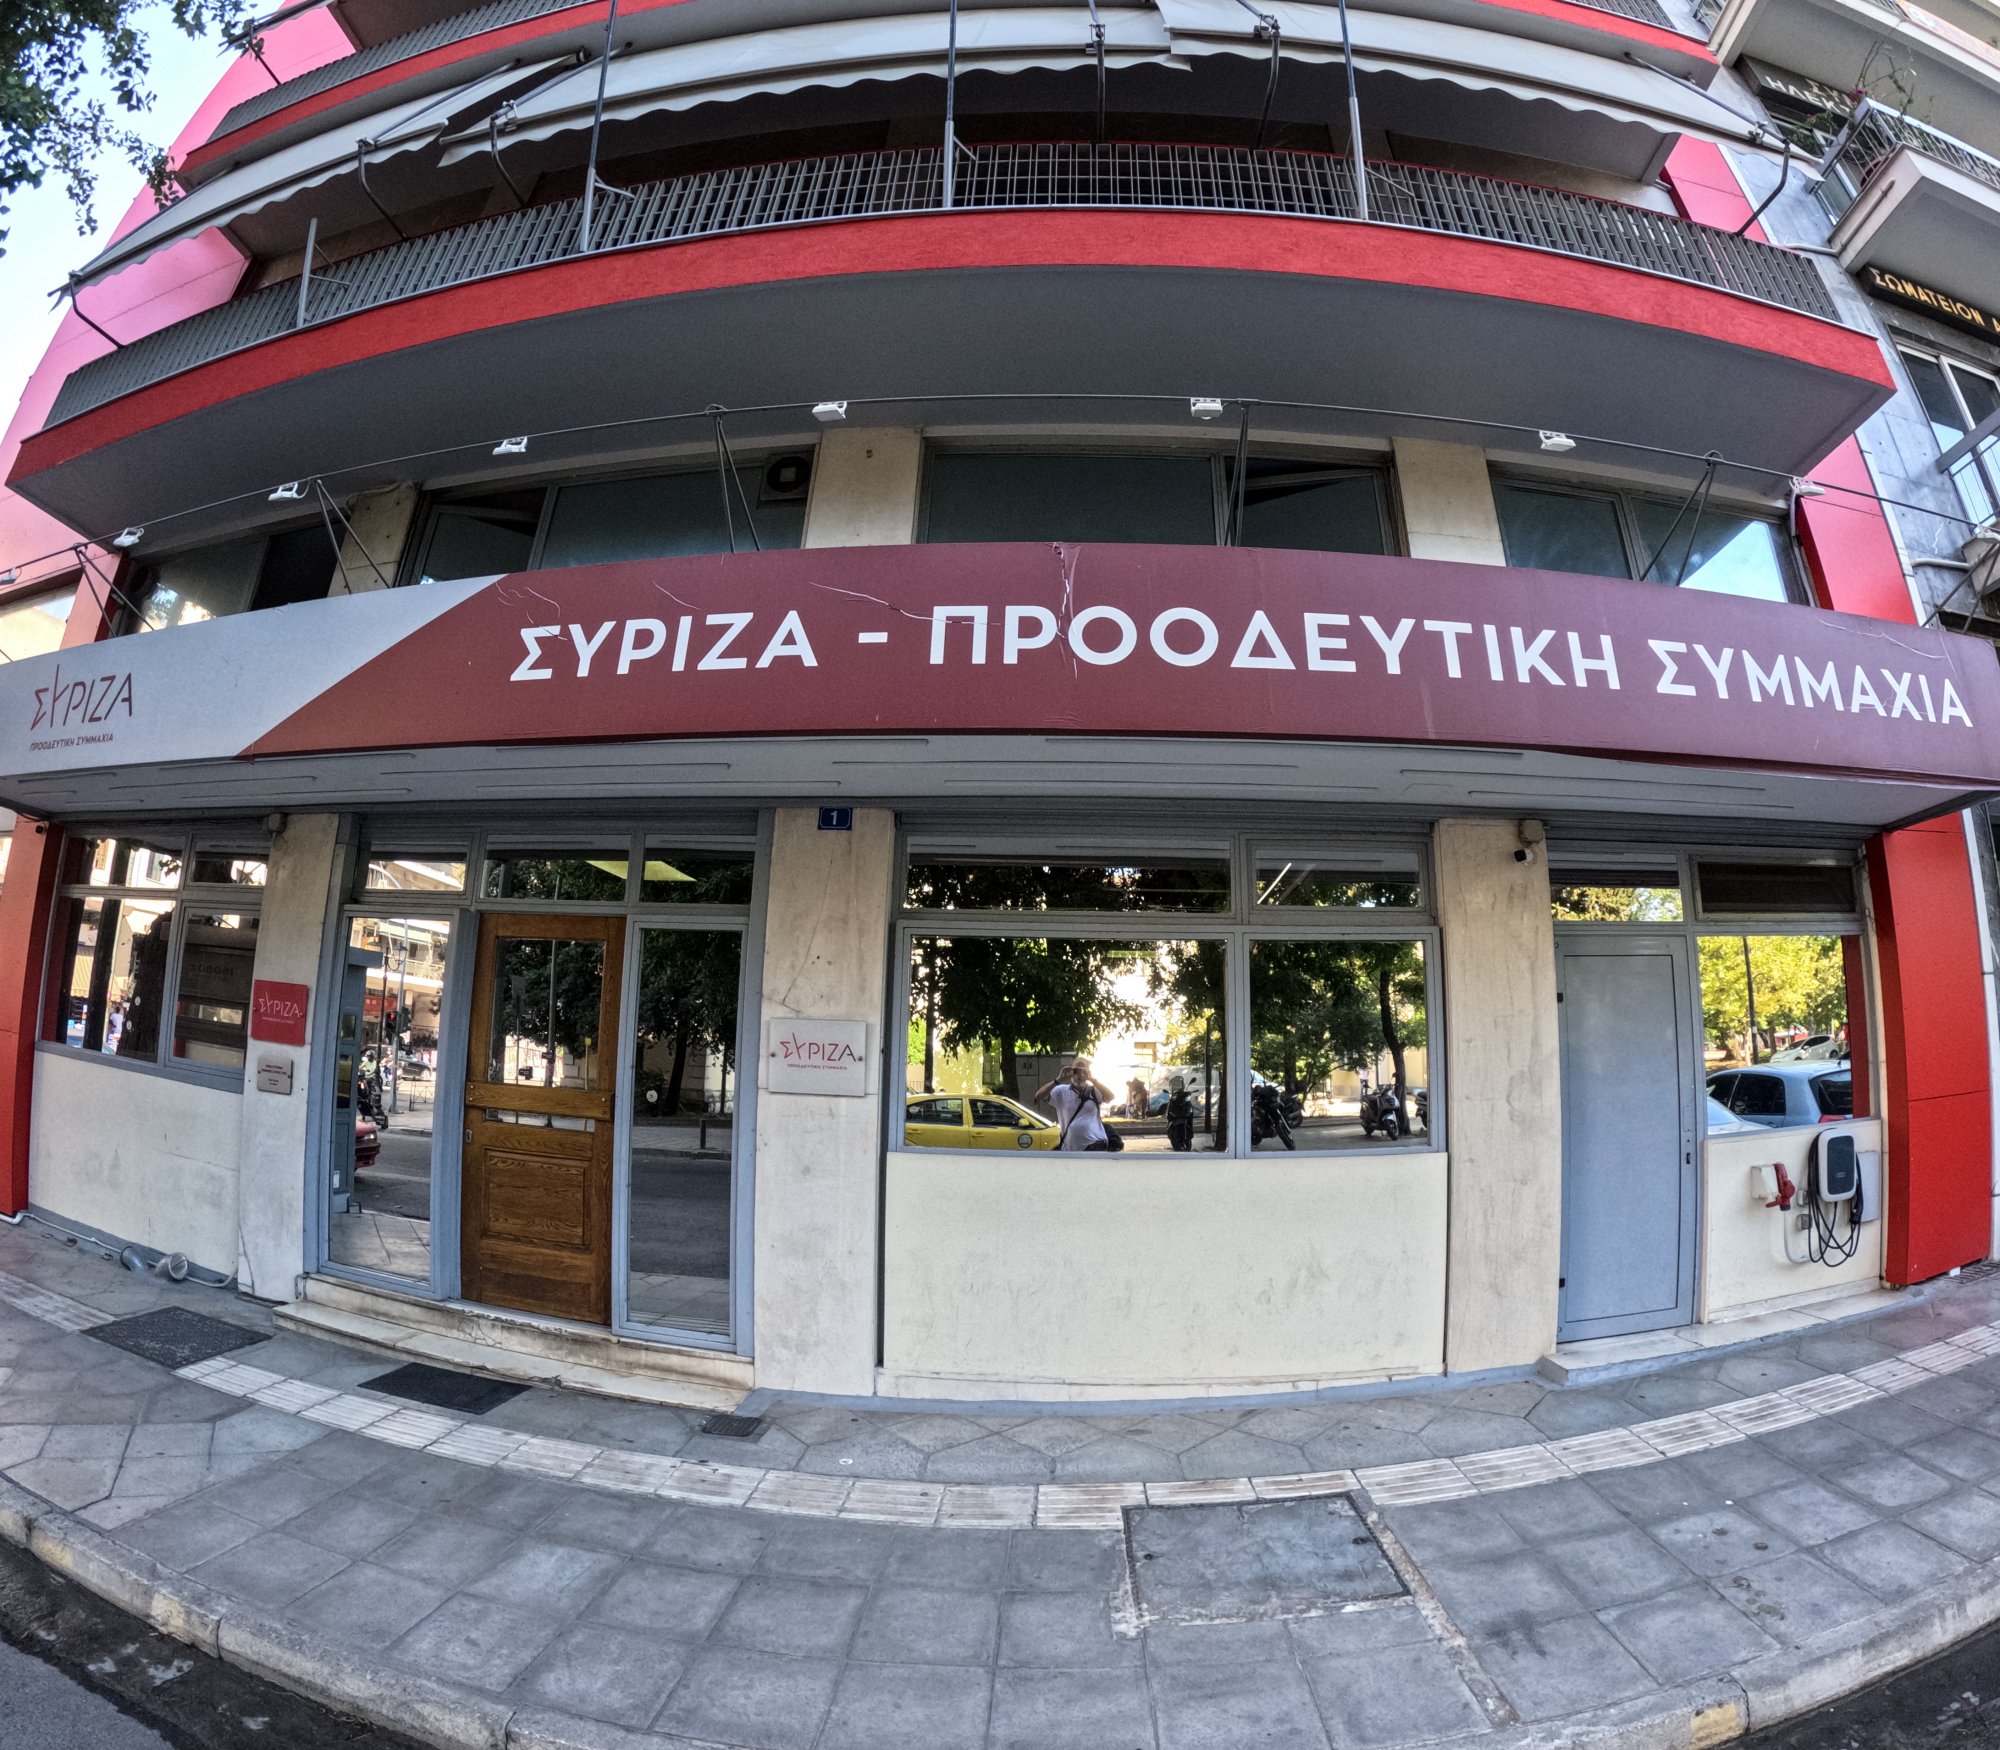 Ο ΣΥΡΙΖΑ ξύπνησε με hangover: Οι αντιδράσεις για τις διαρροές και το βραδινό εμφύλιο Κασσελάκη – Τσίπρα